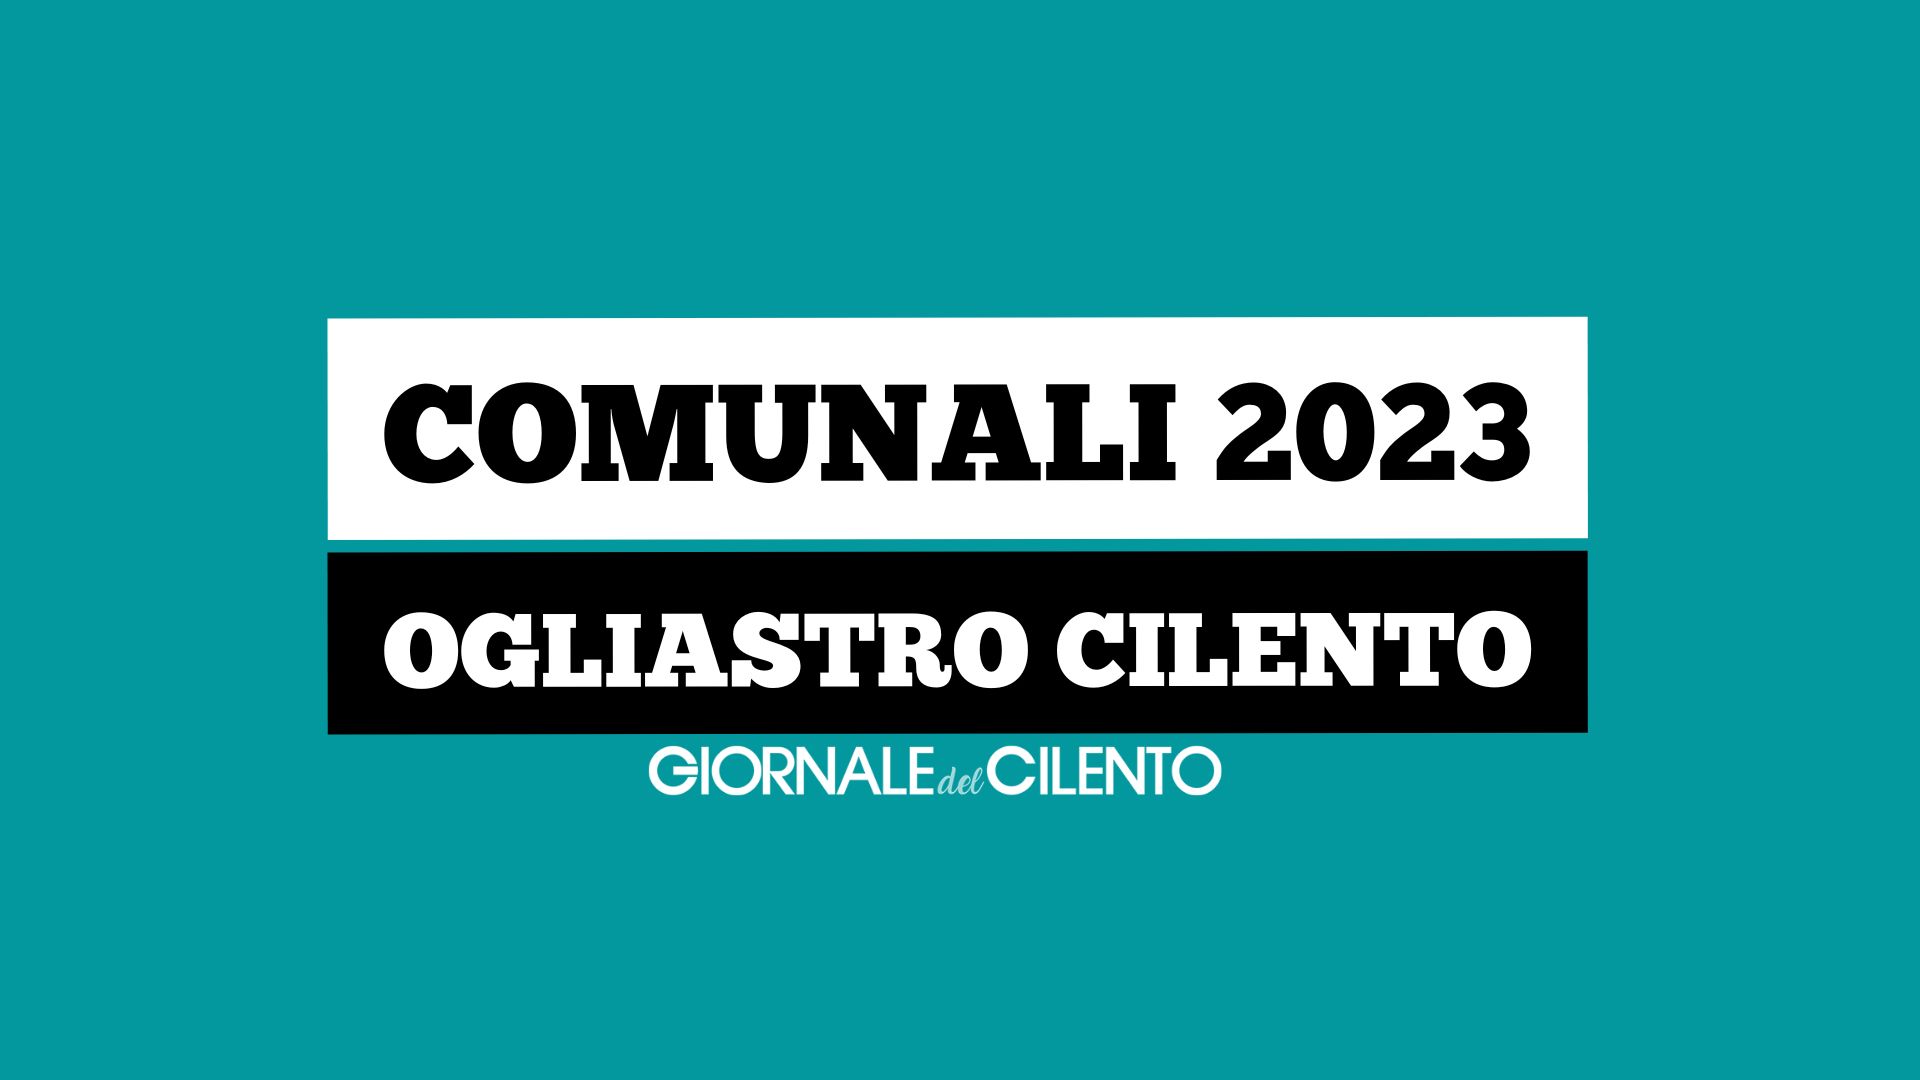 Elezioni comunali 2023, le liste e i candidati a Ogliastro Cilento